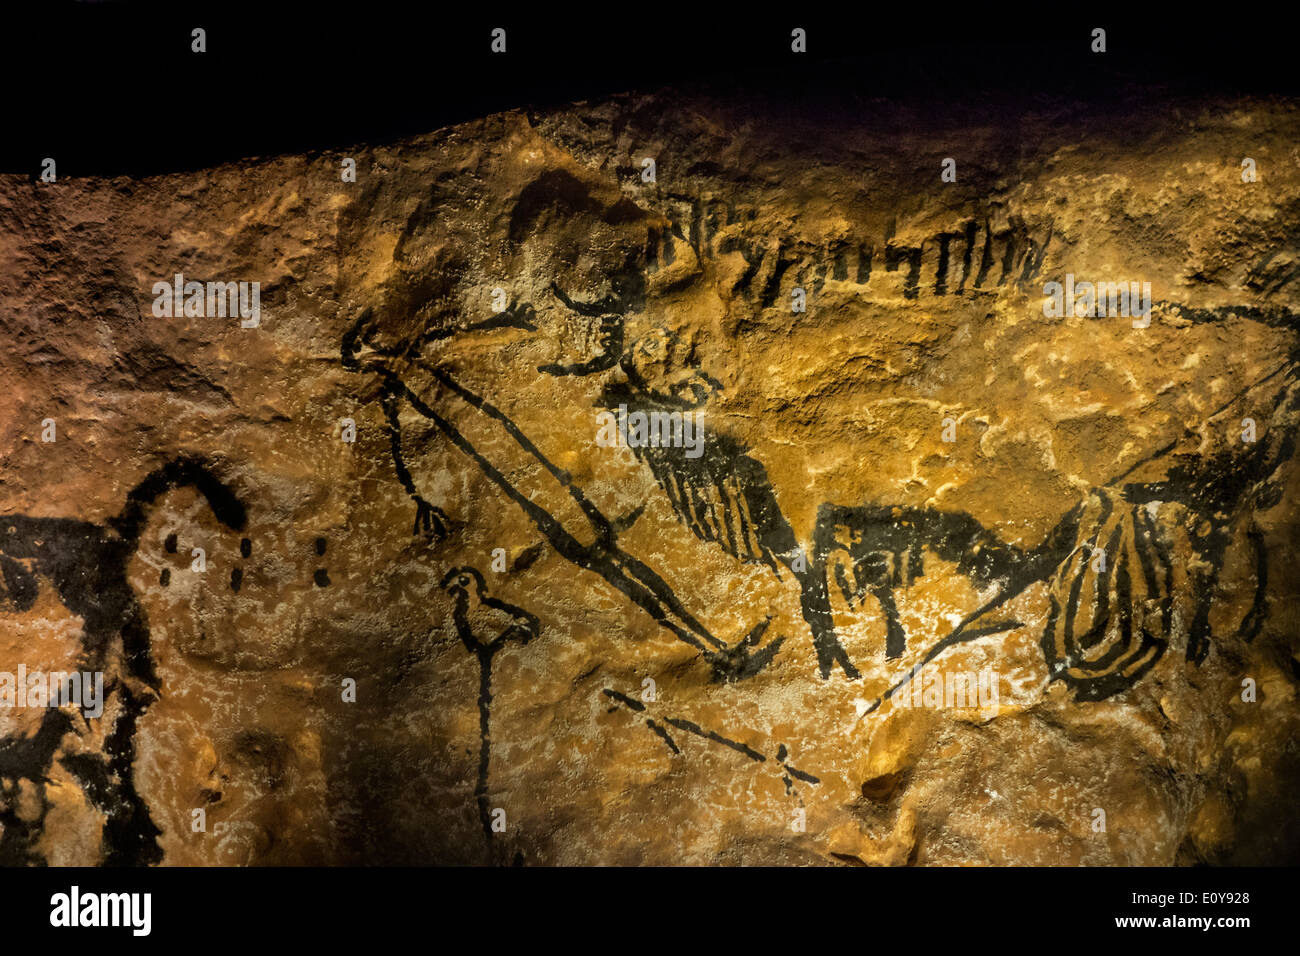 Réplique de la partie de la grotte de Lascaux montrant l'homme préhistorique et le bison, Dordogne, France Banque D'Images